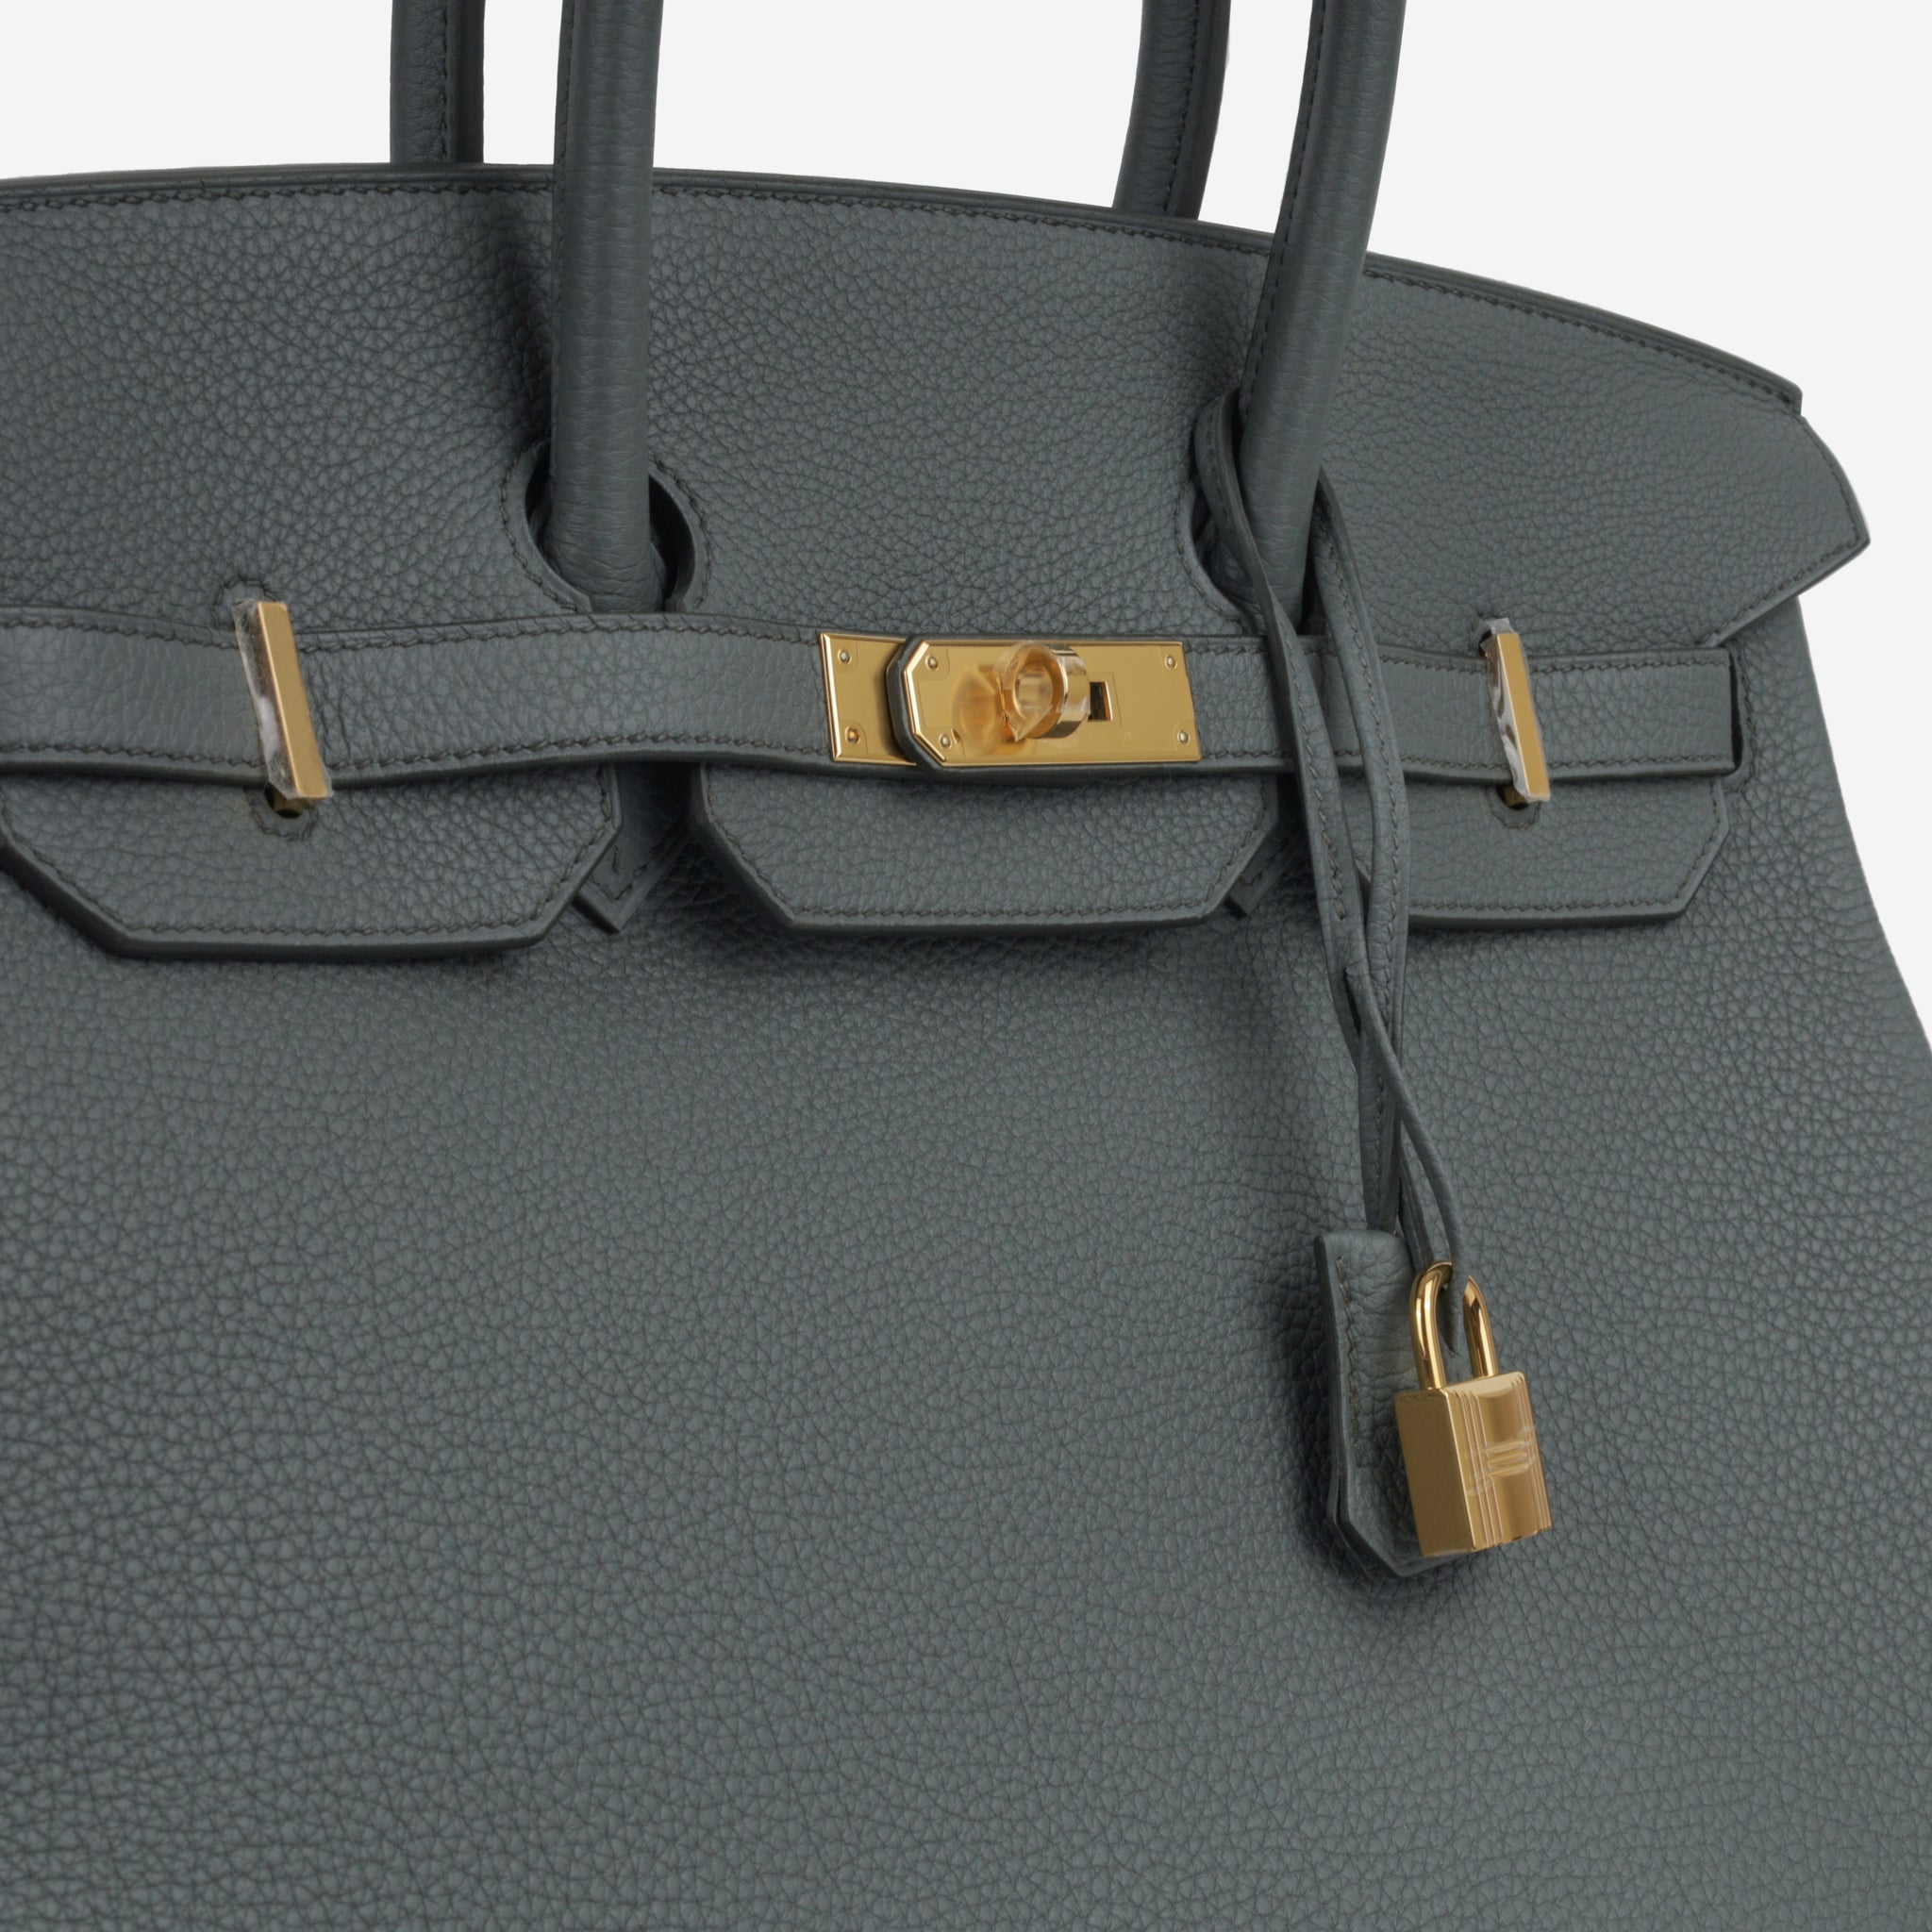 Hermès - Birkin 35 - Vert Amande Togo Leather - GHW - 2022 - Brand new